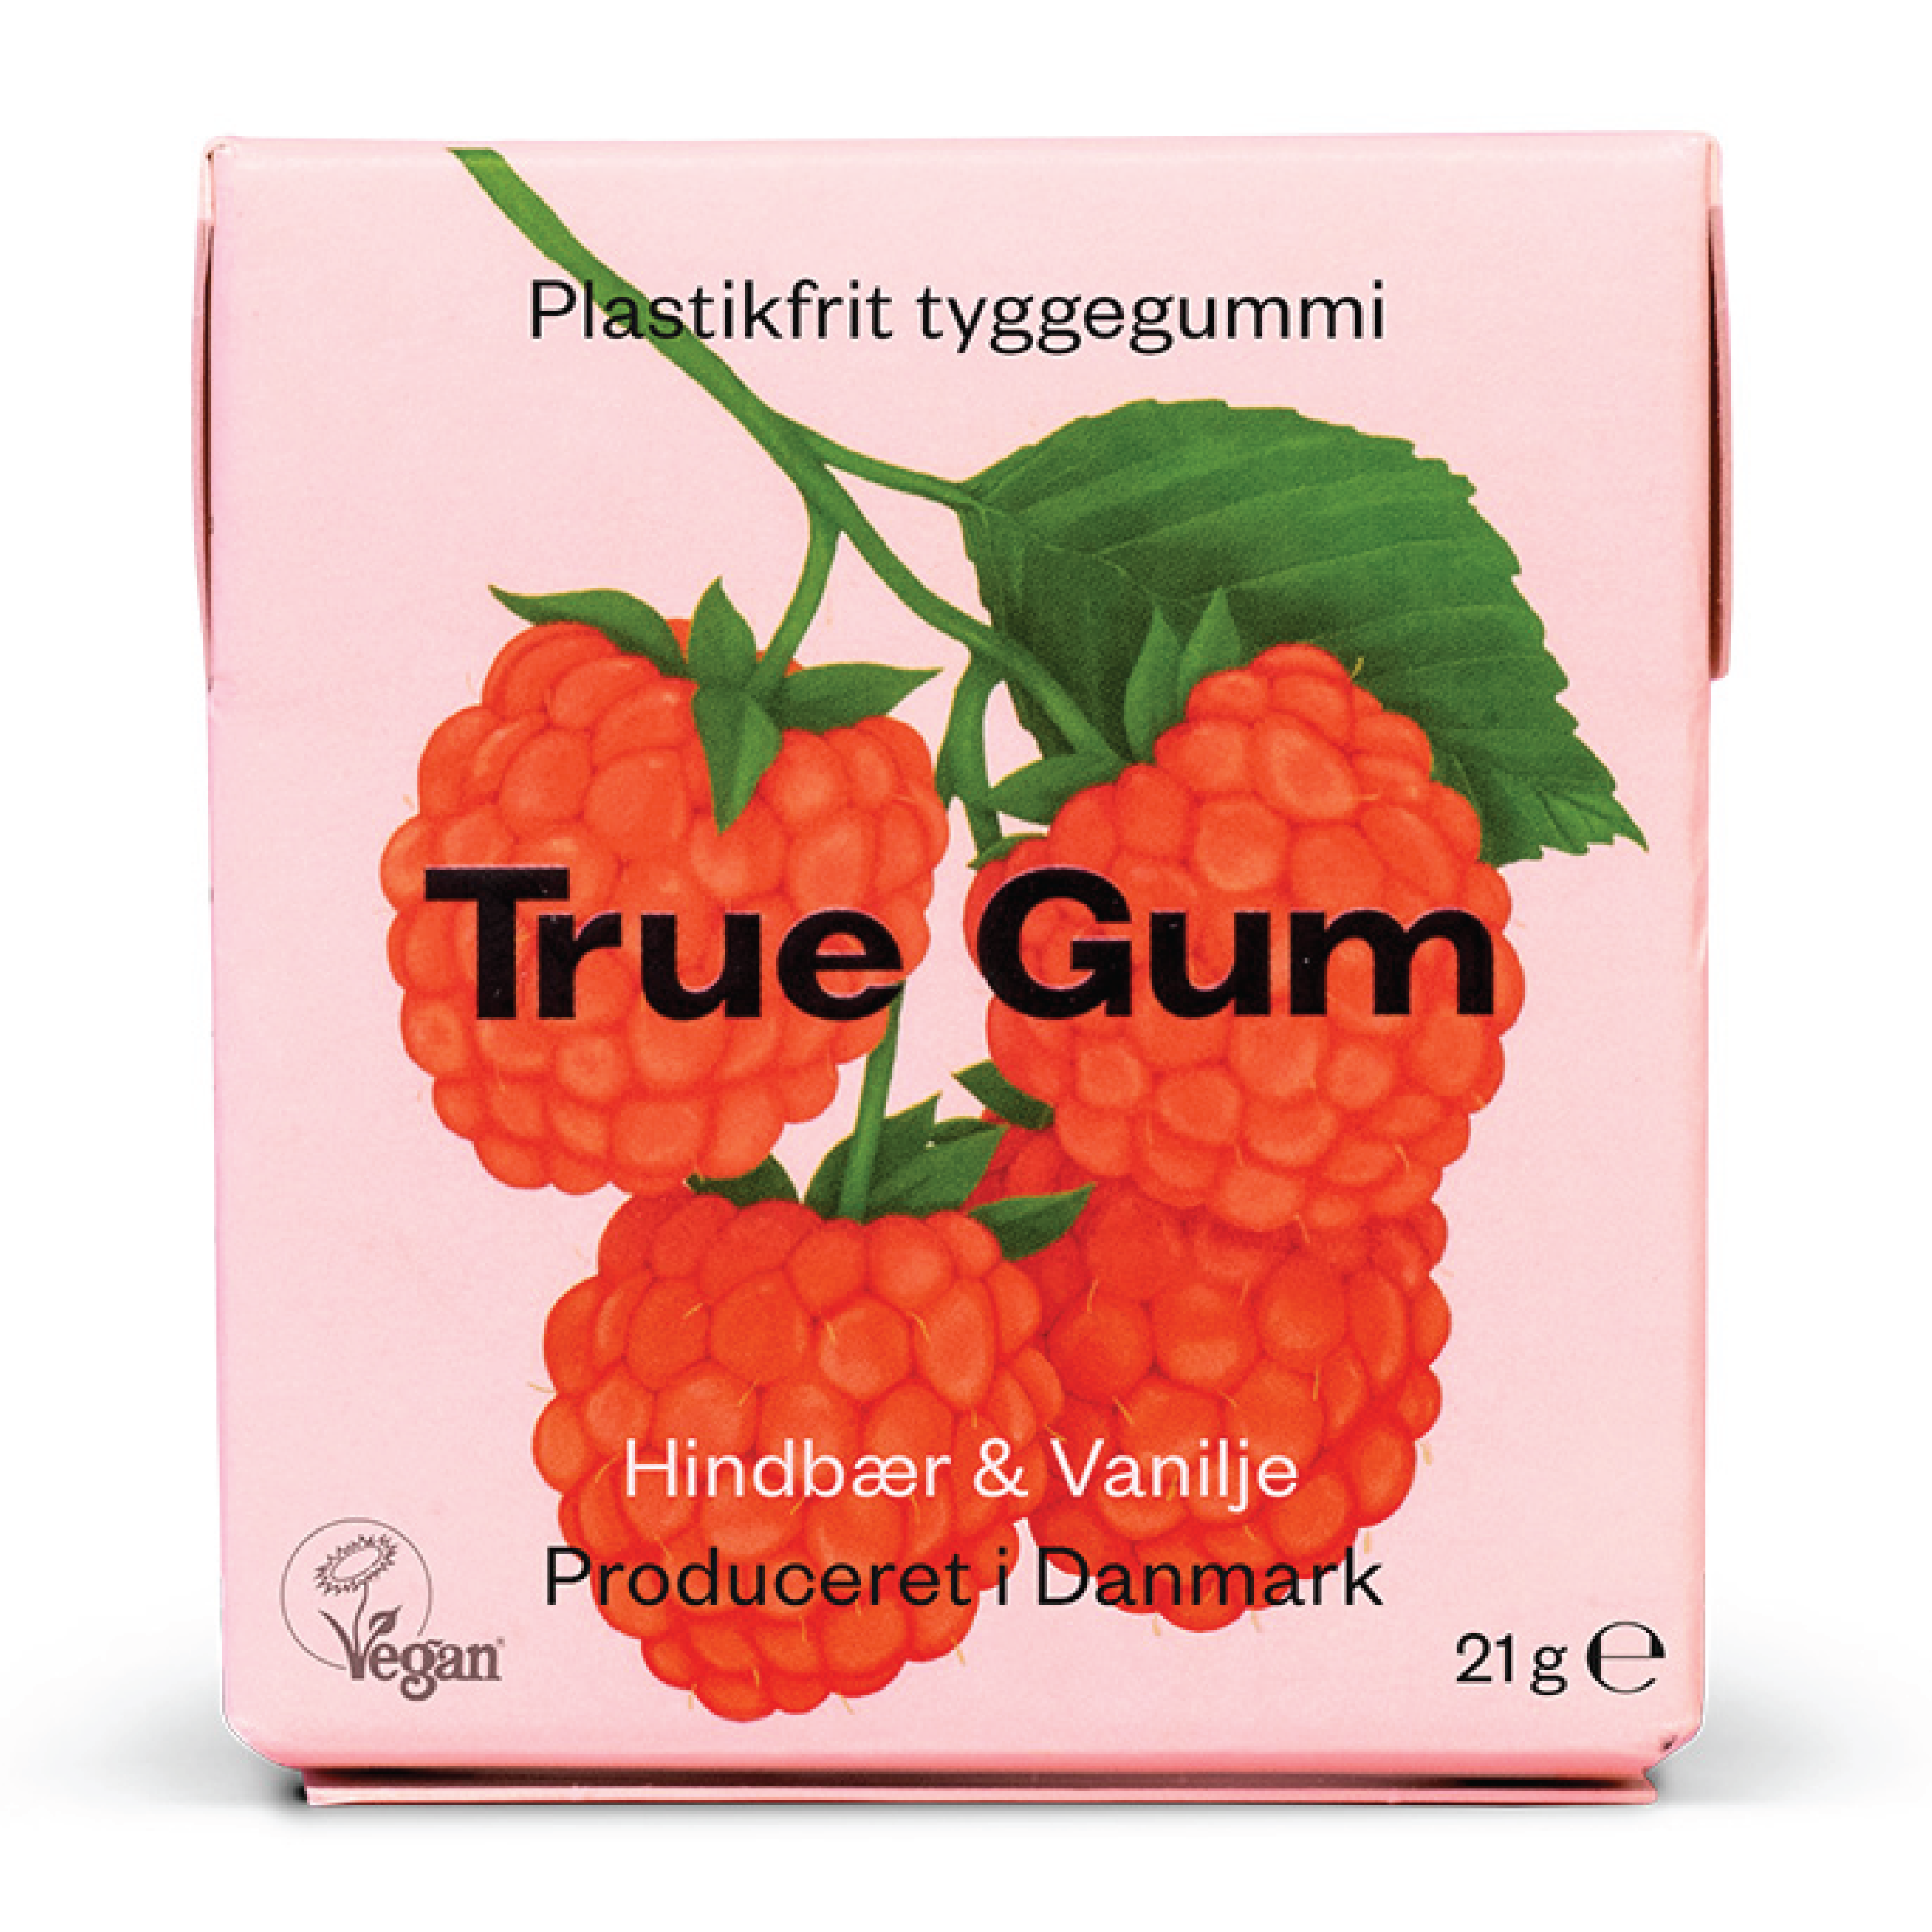 True Gum Bringebær & Vanilje, 21 gr.